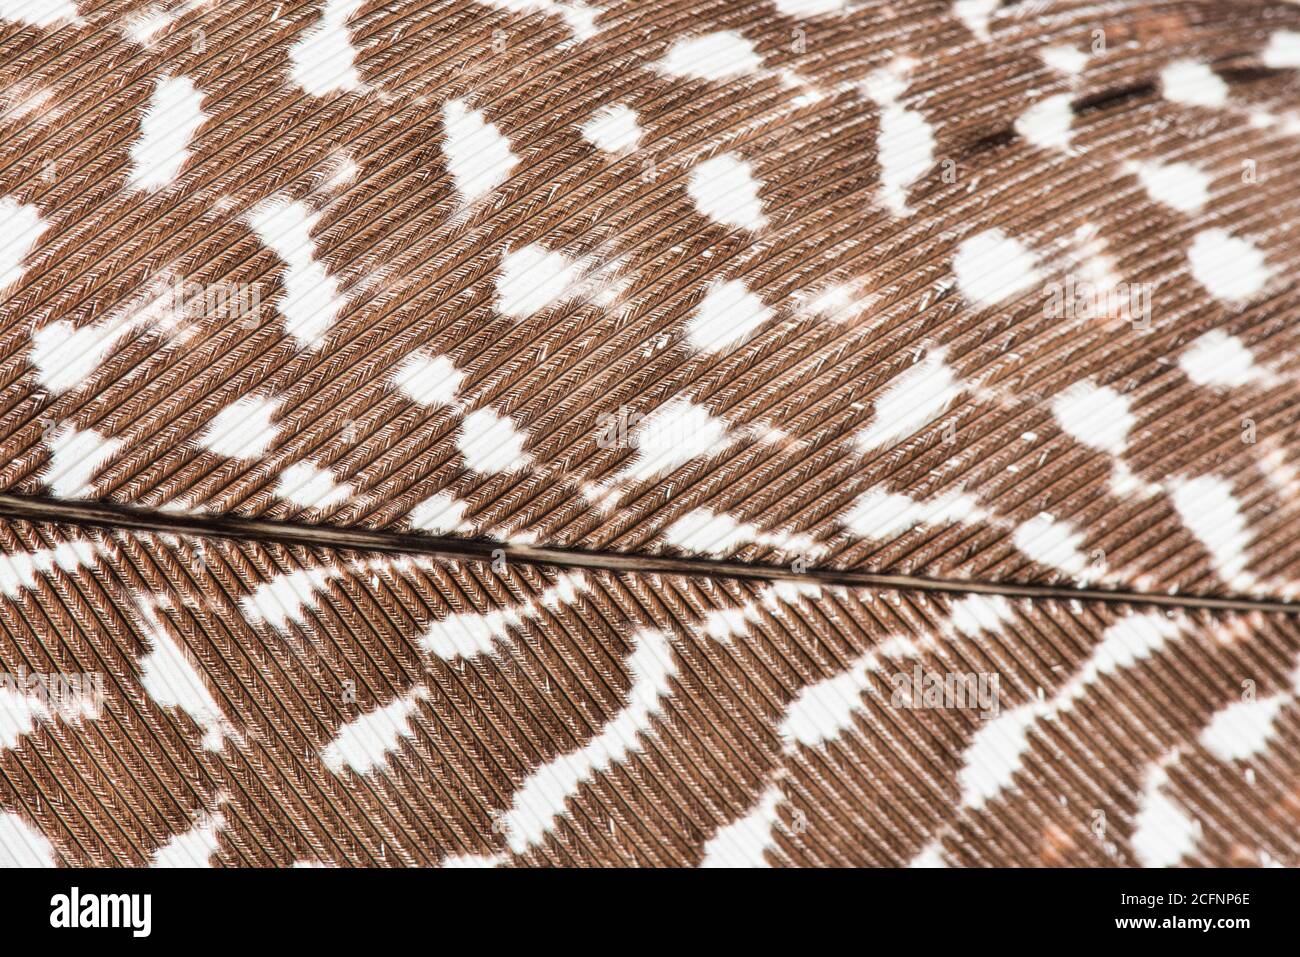 Una macro ad alta risoluzione di una piuma d'uccello, in particolare quella di un fagiano Grande Argus, che mostra in dettaglio l'anatomia della piuma. Foto Stock